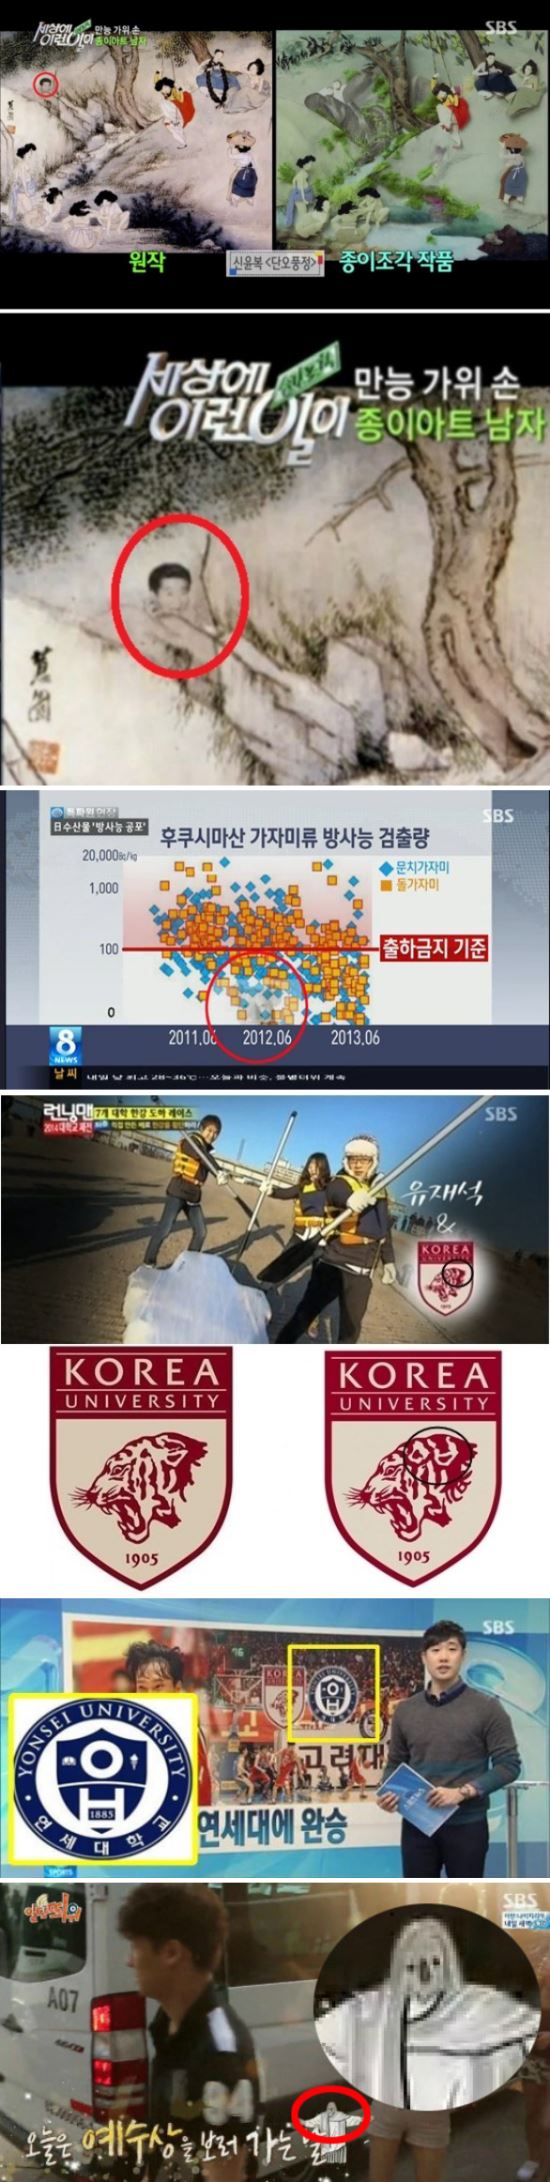 SBS 일베이미지 송출사고 캡처 모음